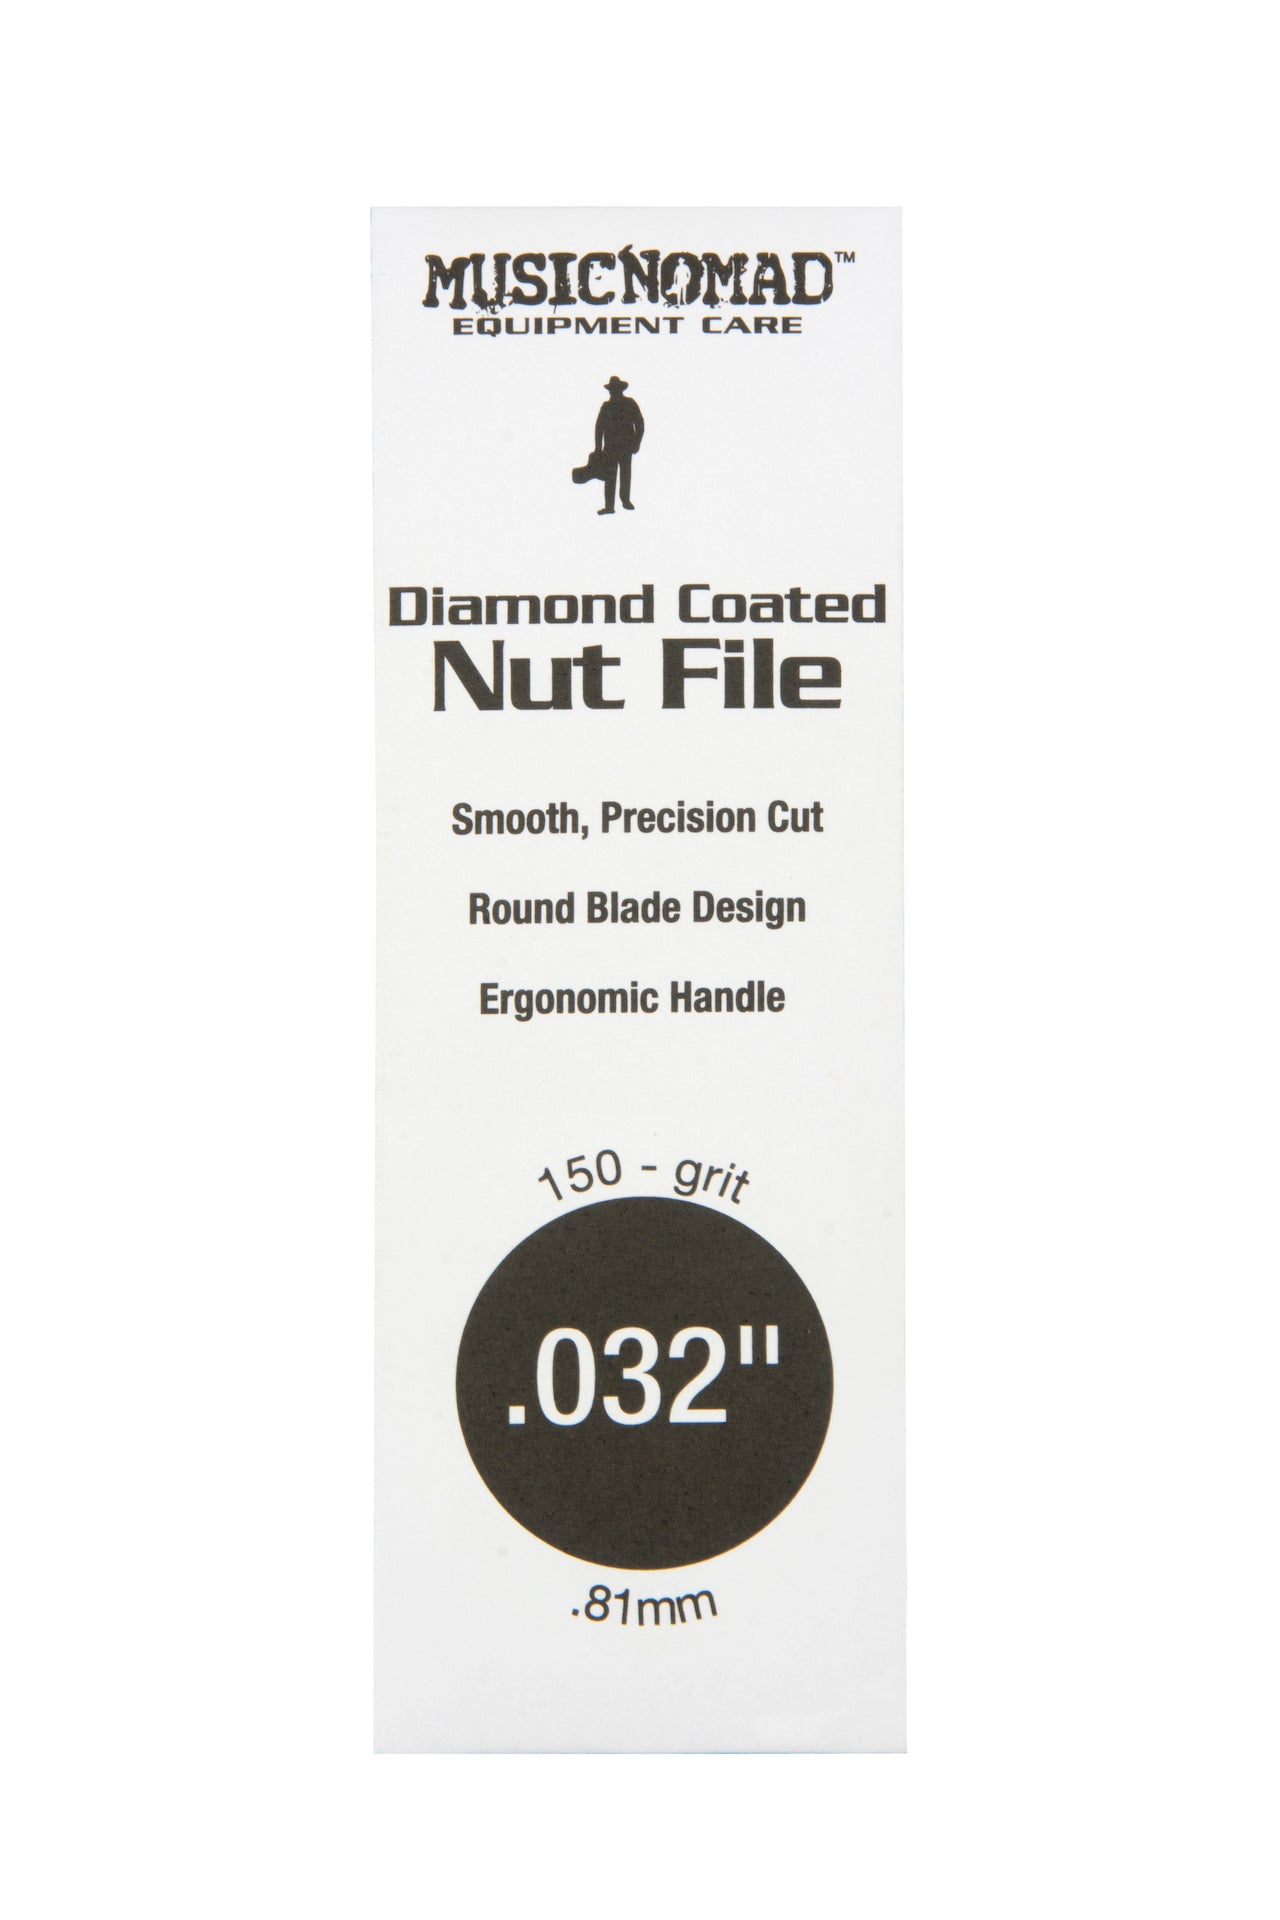 Music Nomad Diamond Coated Nut File Singles - HIENDGUITAR .032" .032" musicnomad musicnomad